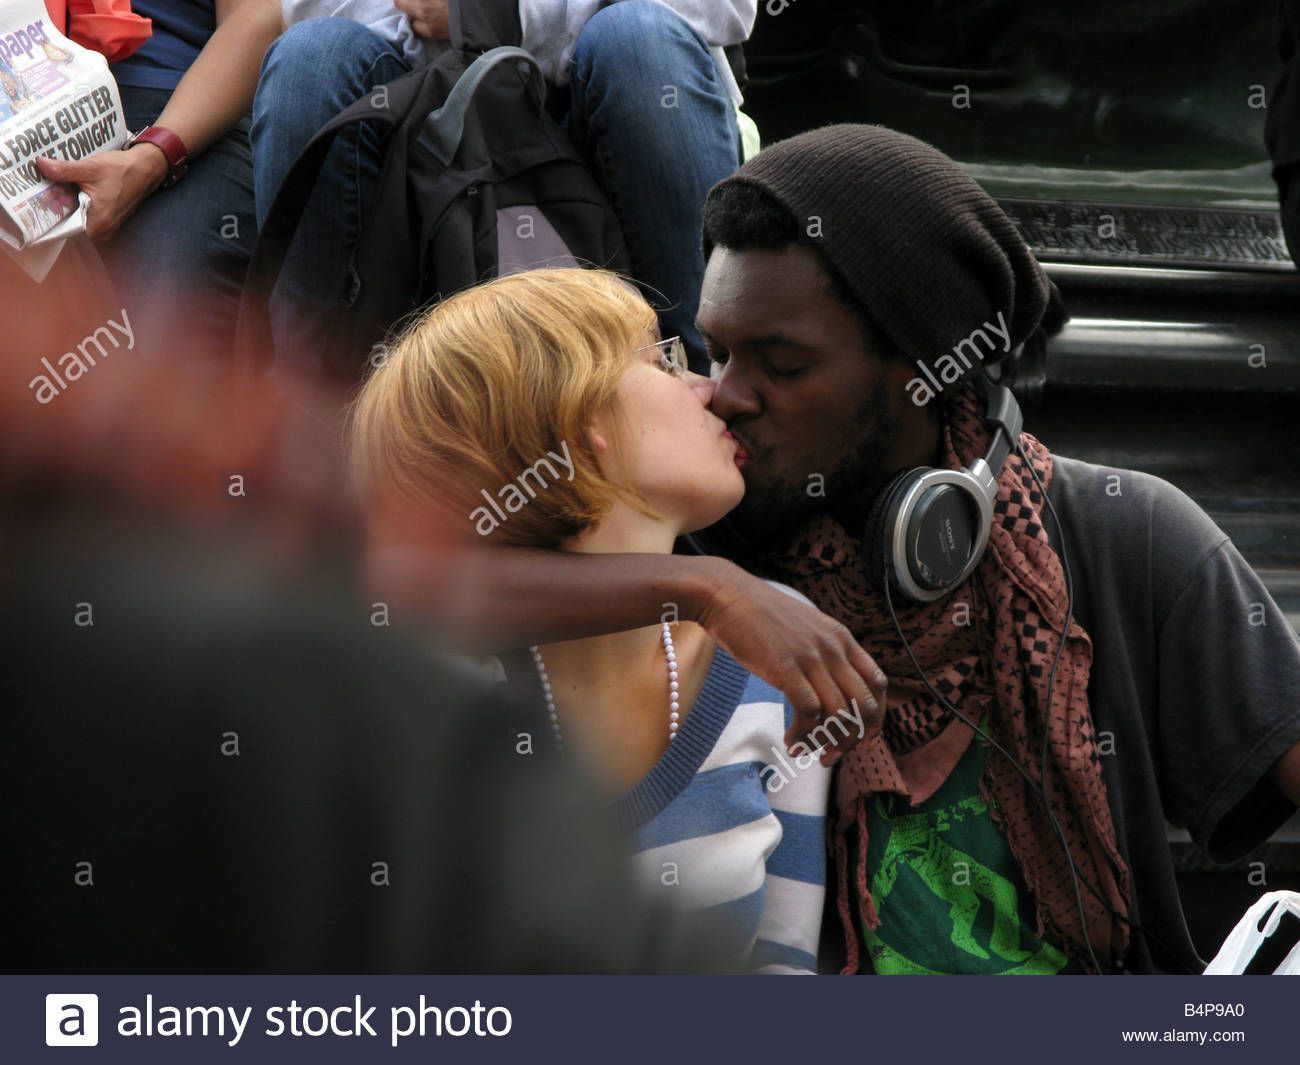 Interracial kiss pics